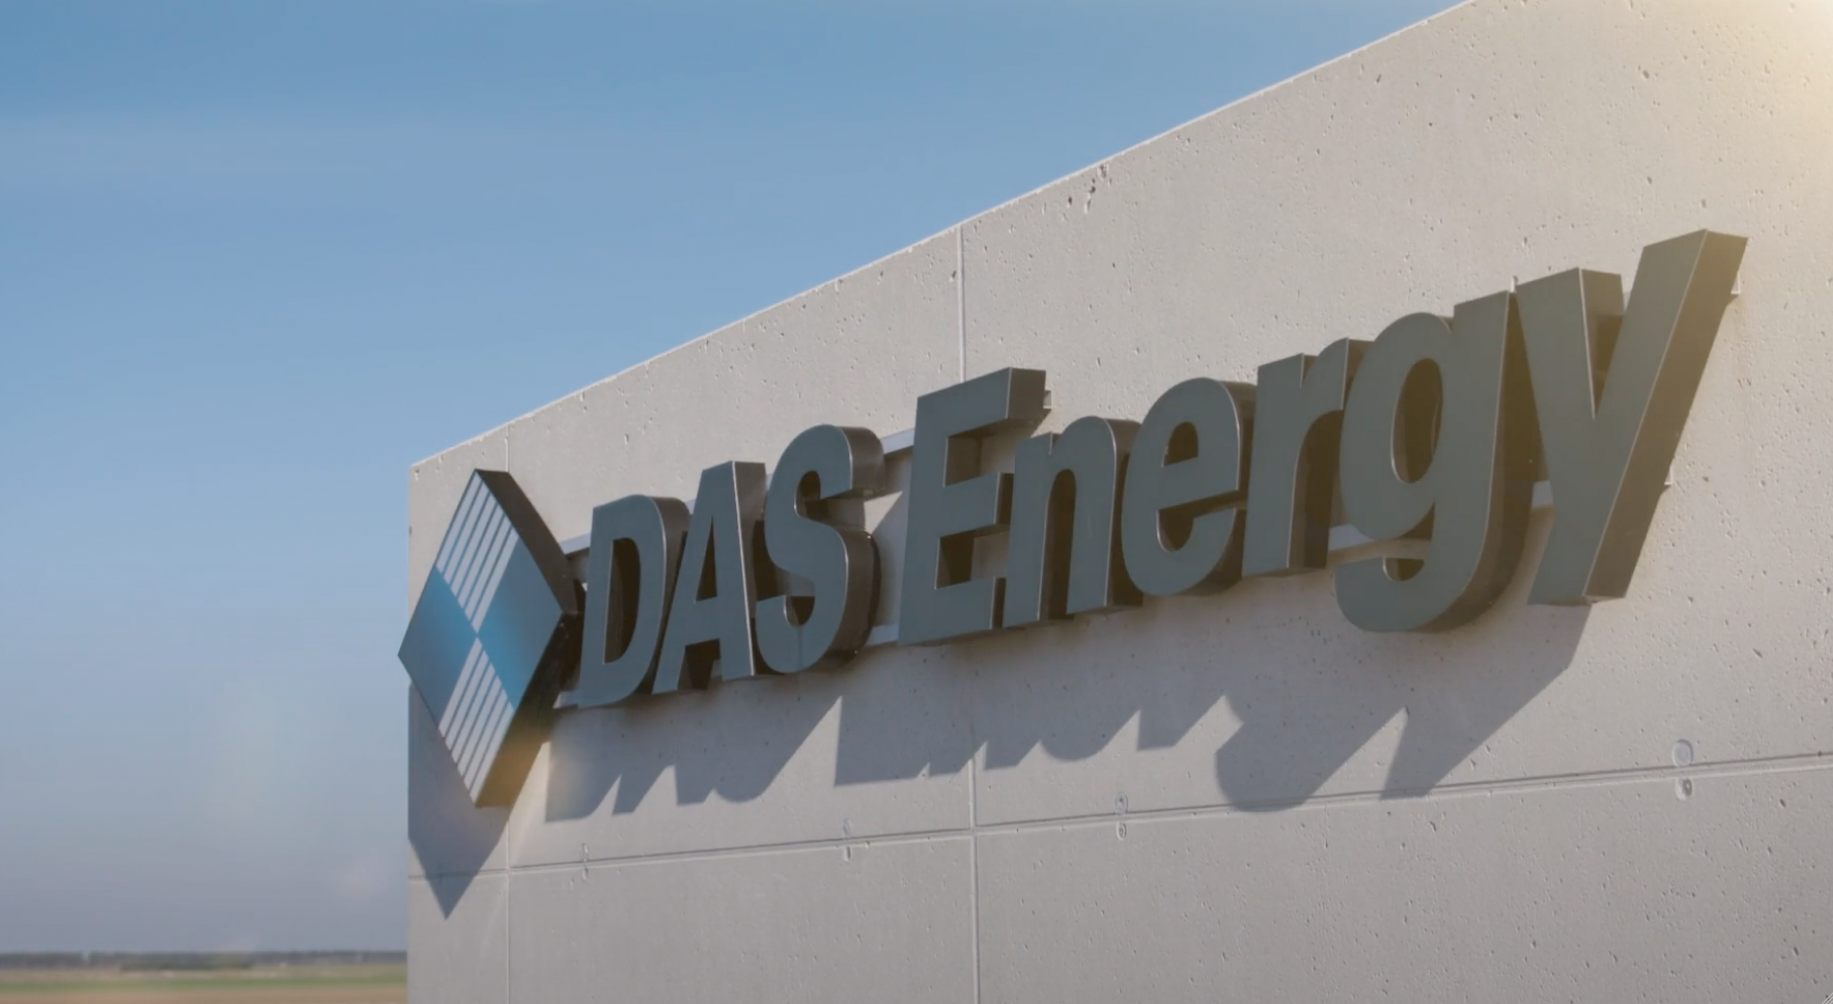 (c) Das-energy.com